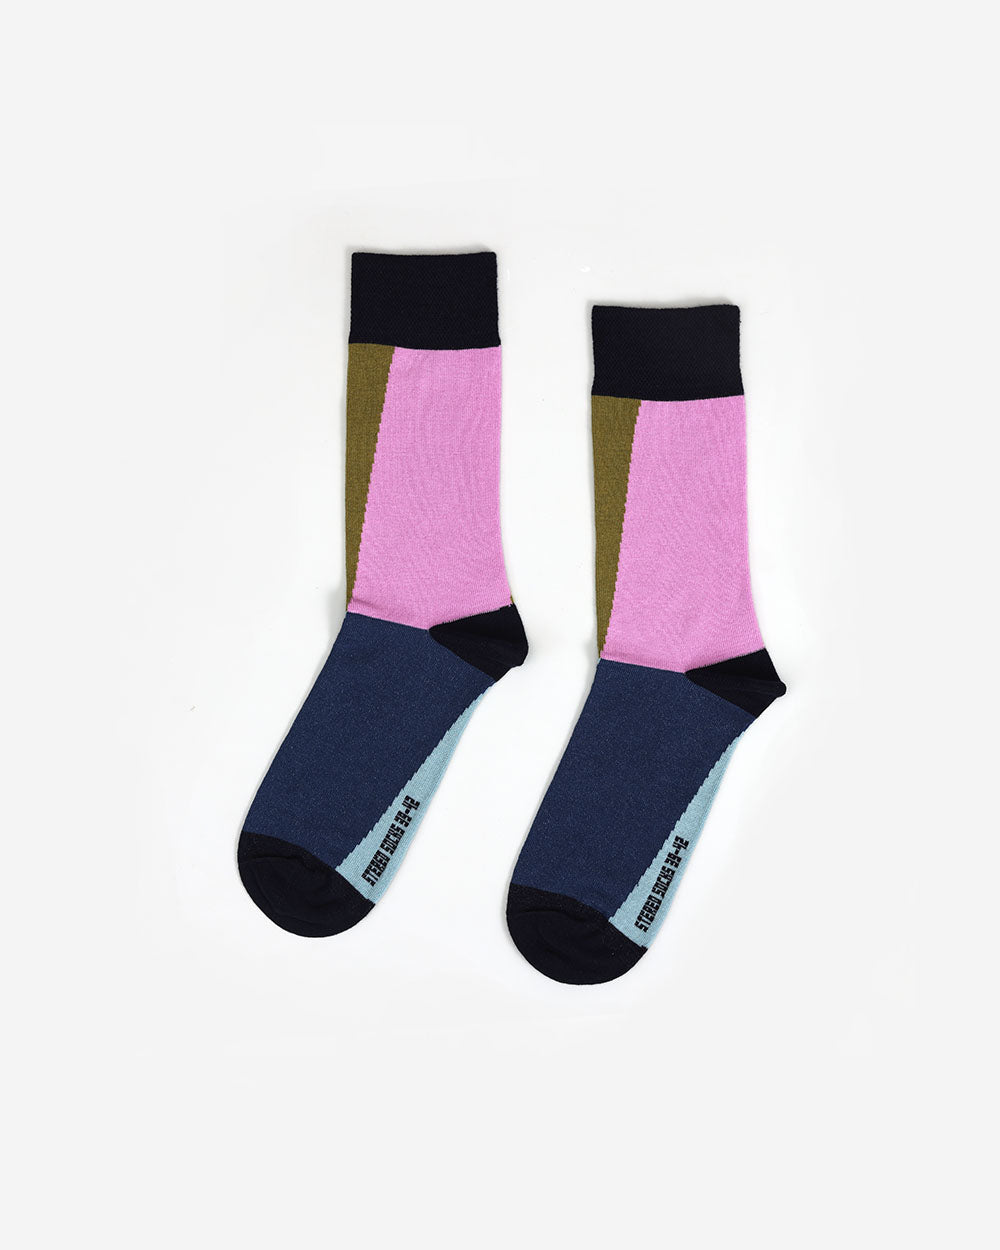 Vogue Vertigo Socks